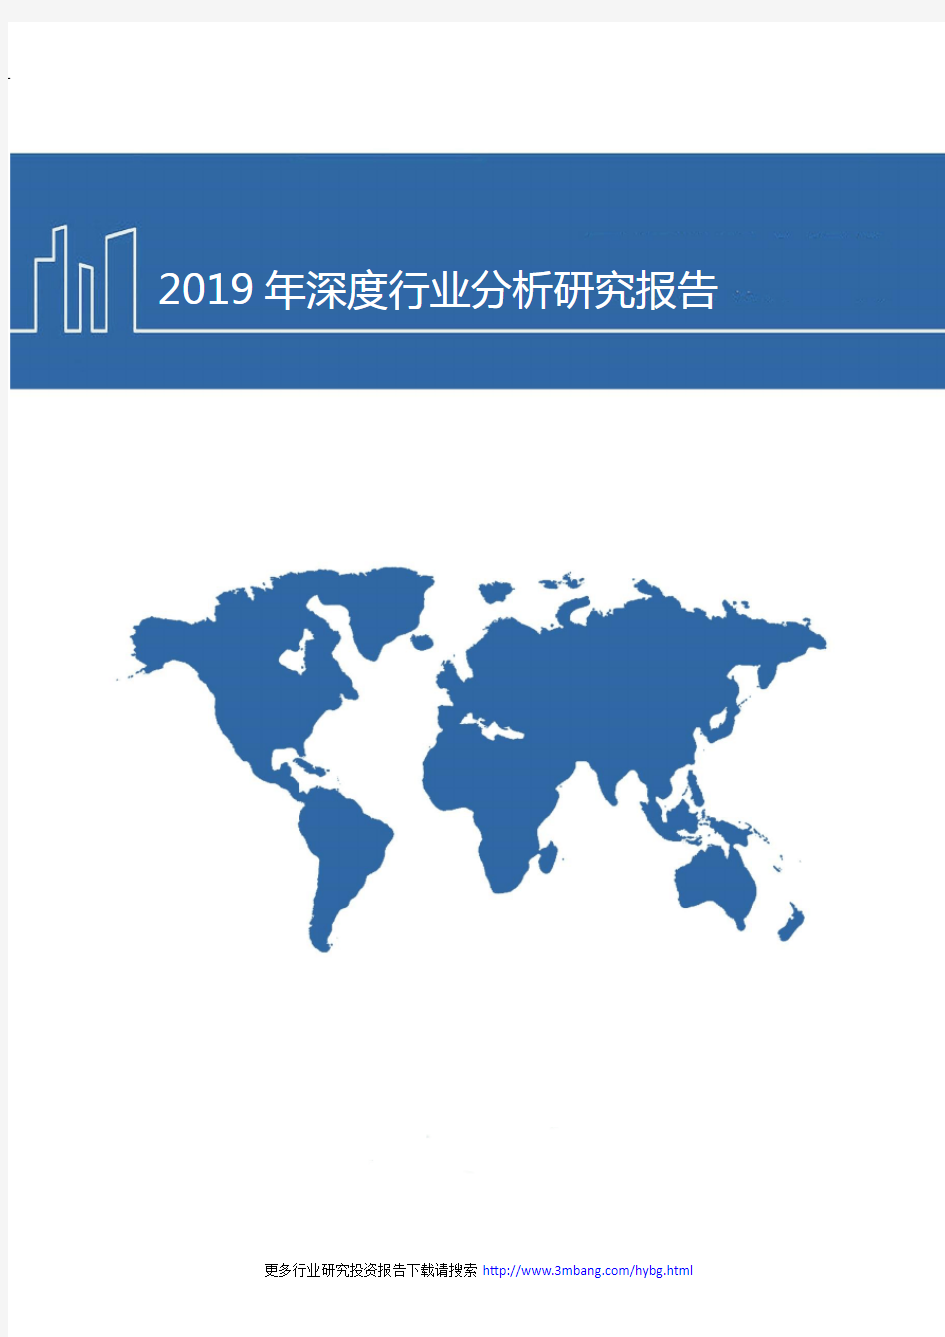 2019年中国红外探测器发展现状及未来发展趋势分析报告